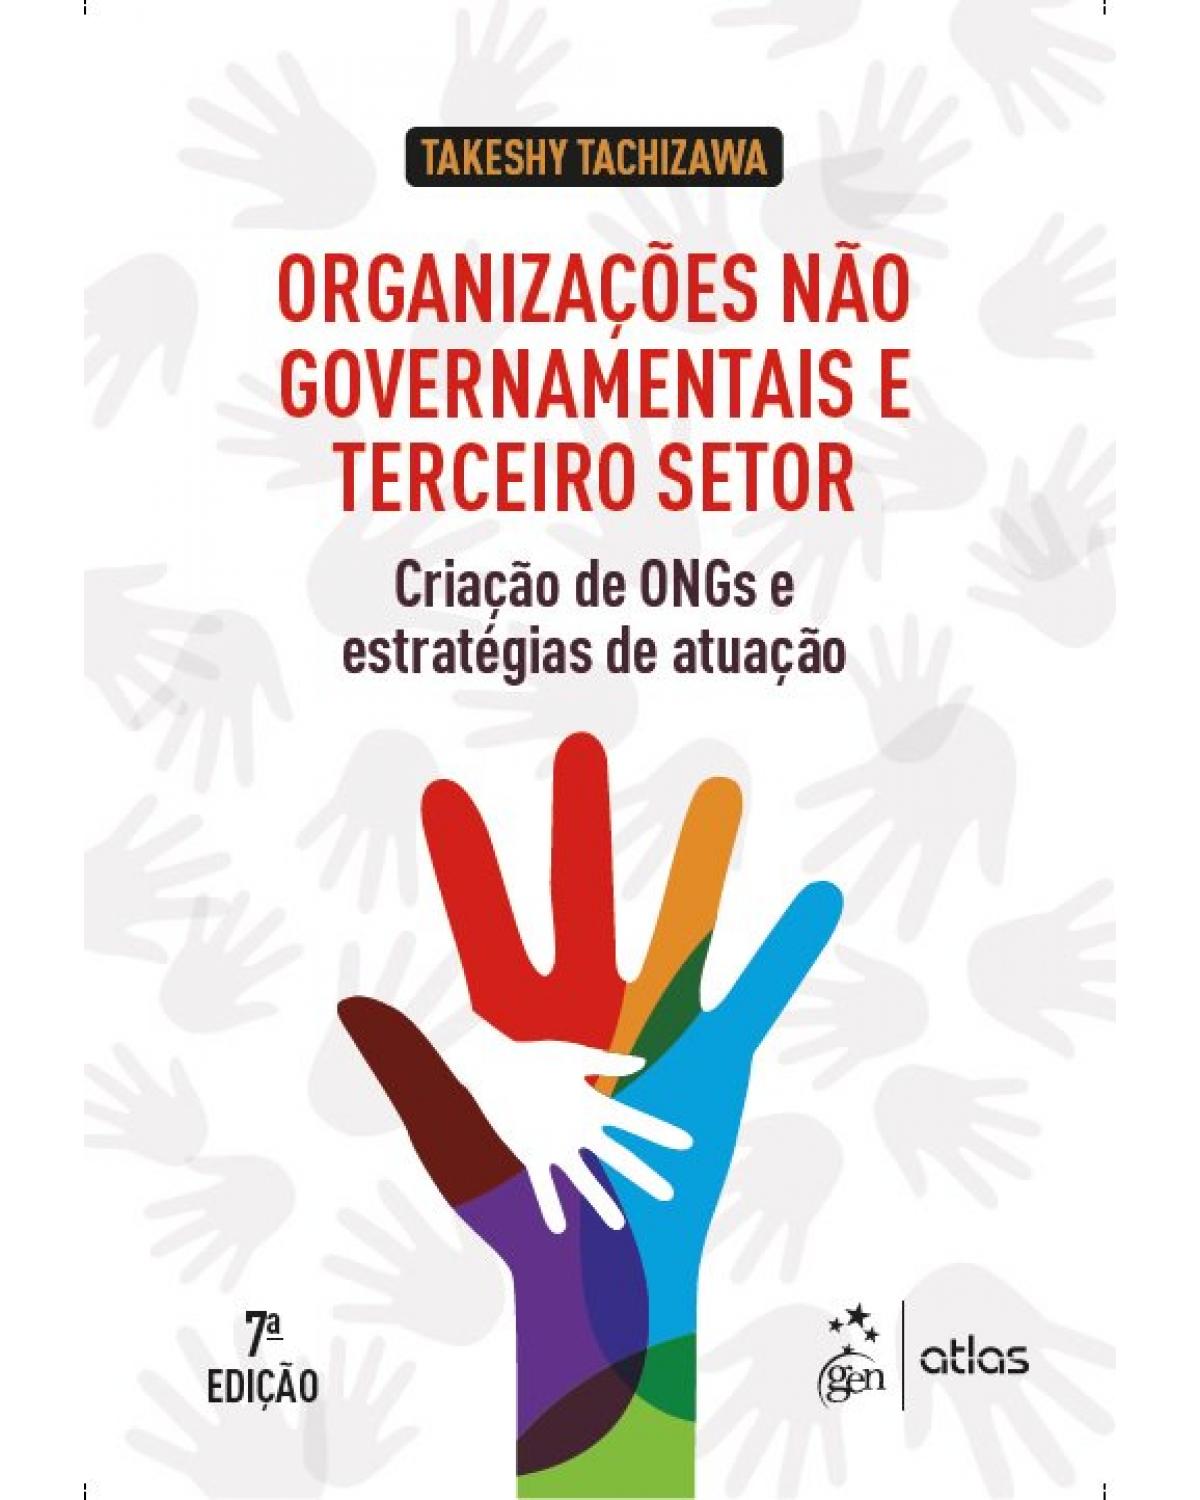 Organizações não governamentais e terceiro setor - criação de ONGs e estratégias de atuação - 7ª Edição | 2019